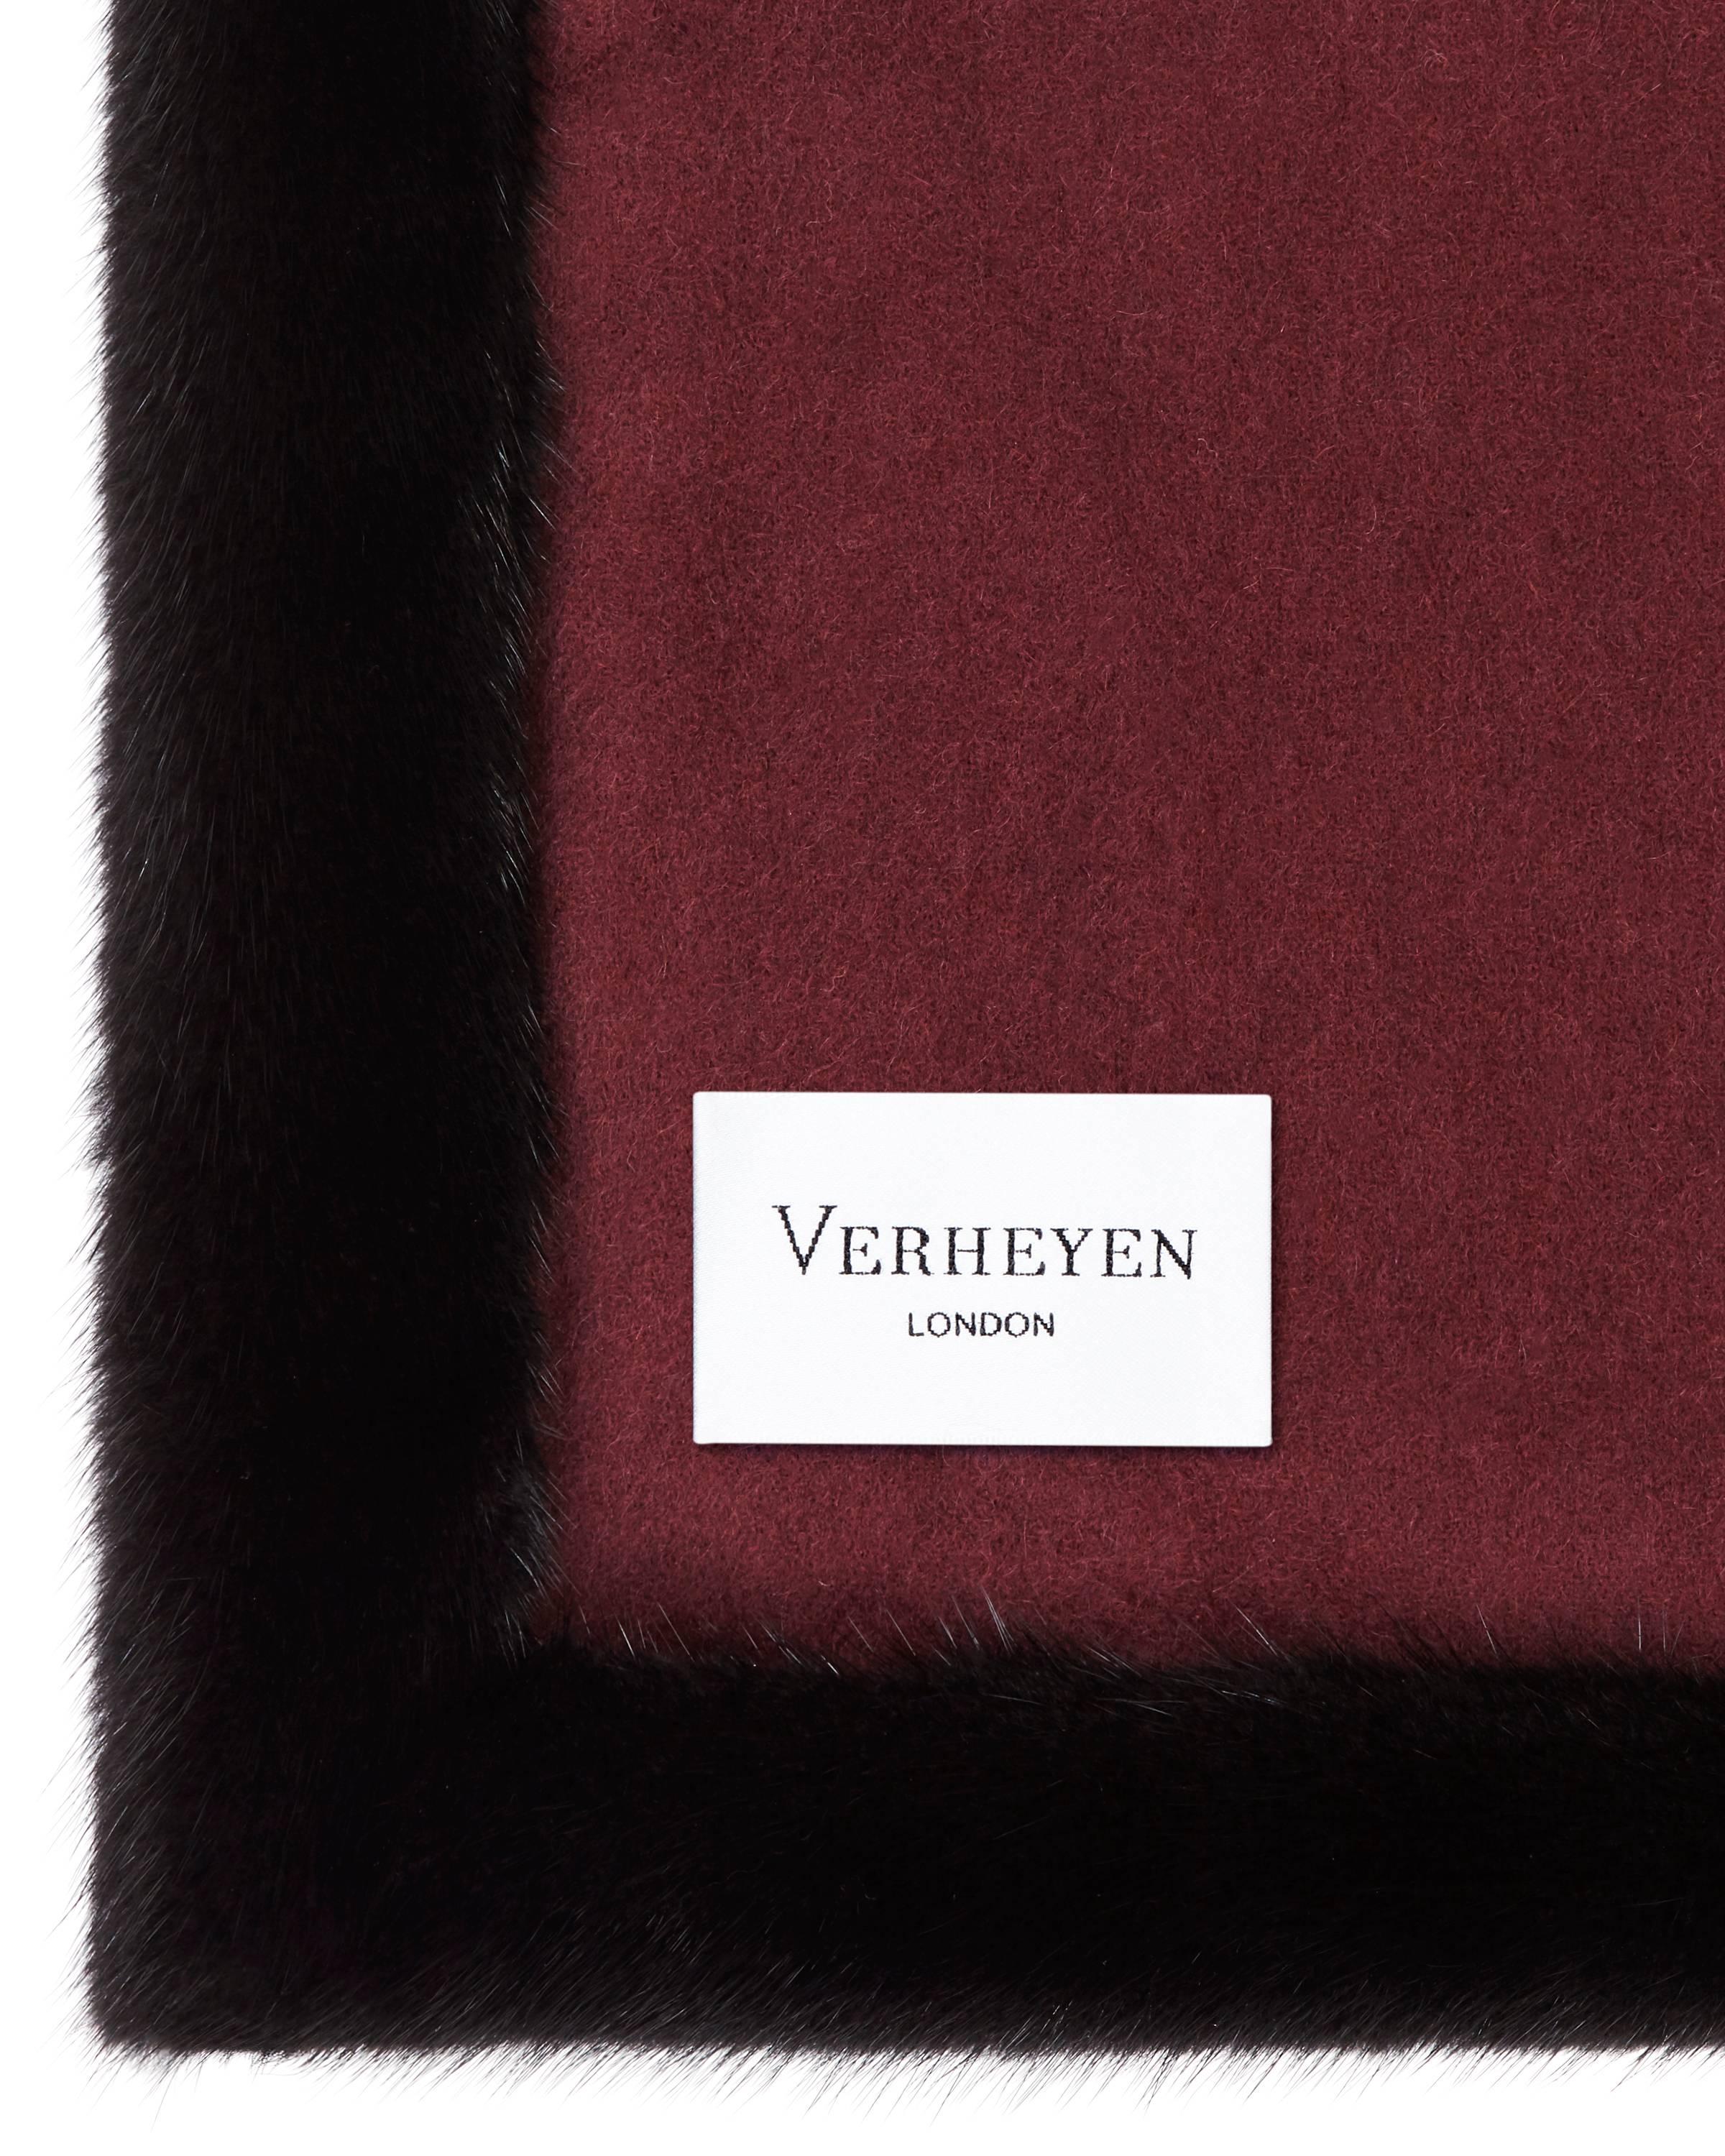 Verheyen London Limited Edition Mink Fur Trimmed Burgundy Cashmere Shawl   (Schwarz)